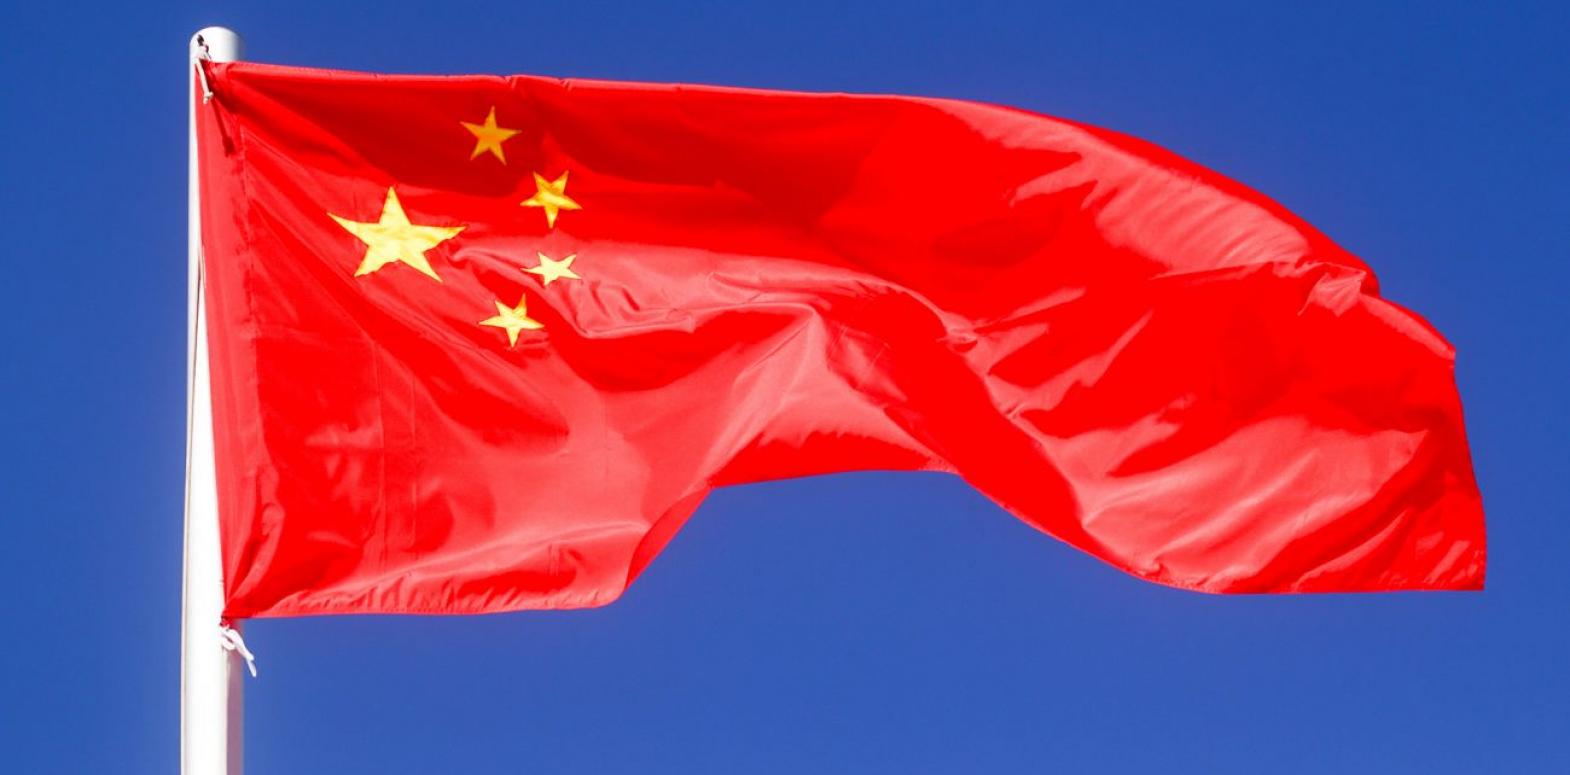 Китай и Россия переходят на подпольные платежи из-за отказа банков от сделок, - Reuters